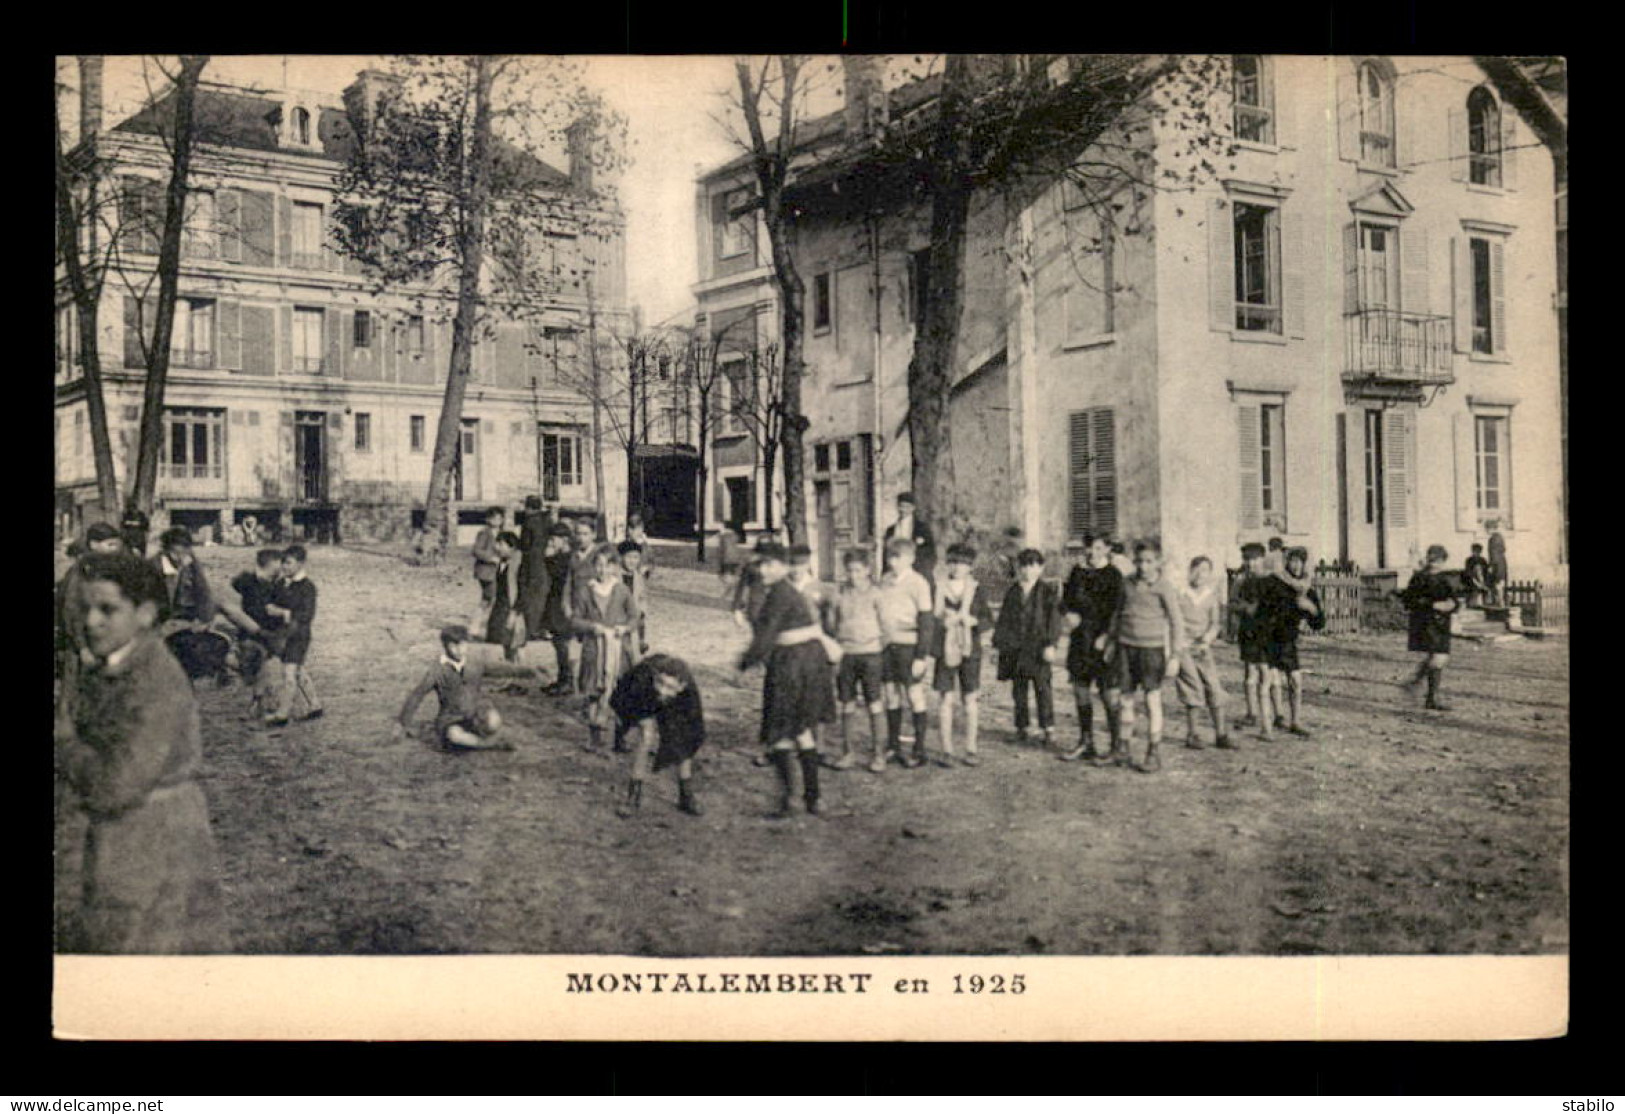 92 - COURBEVOIE - MONTALEMBERT EN 1925 - LES ENFANTS DANS LA COUR - Courbevoie